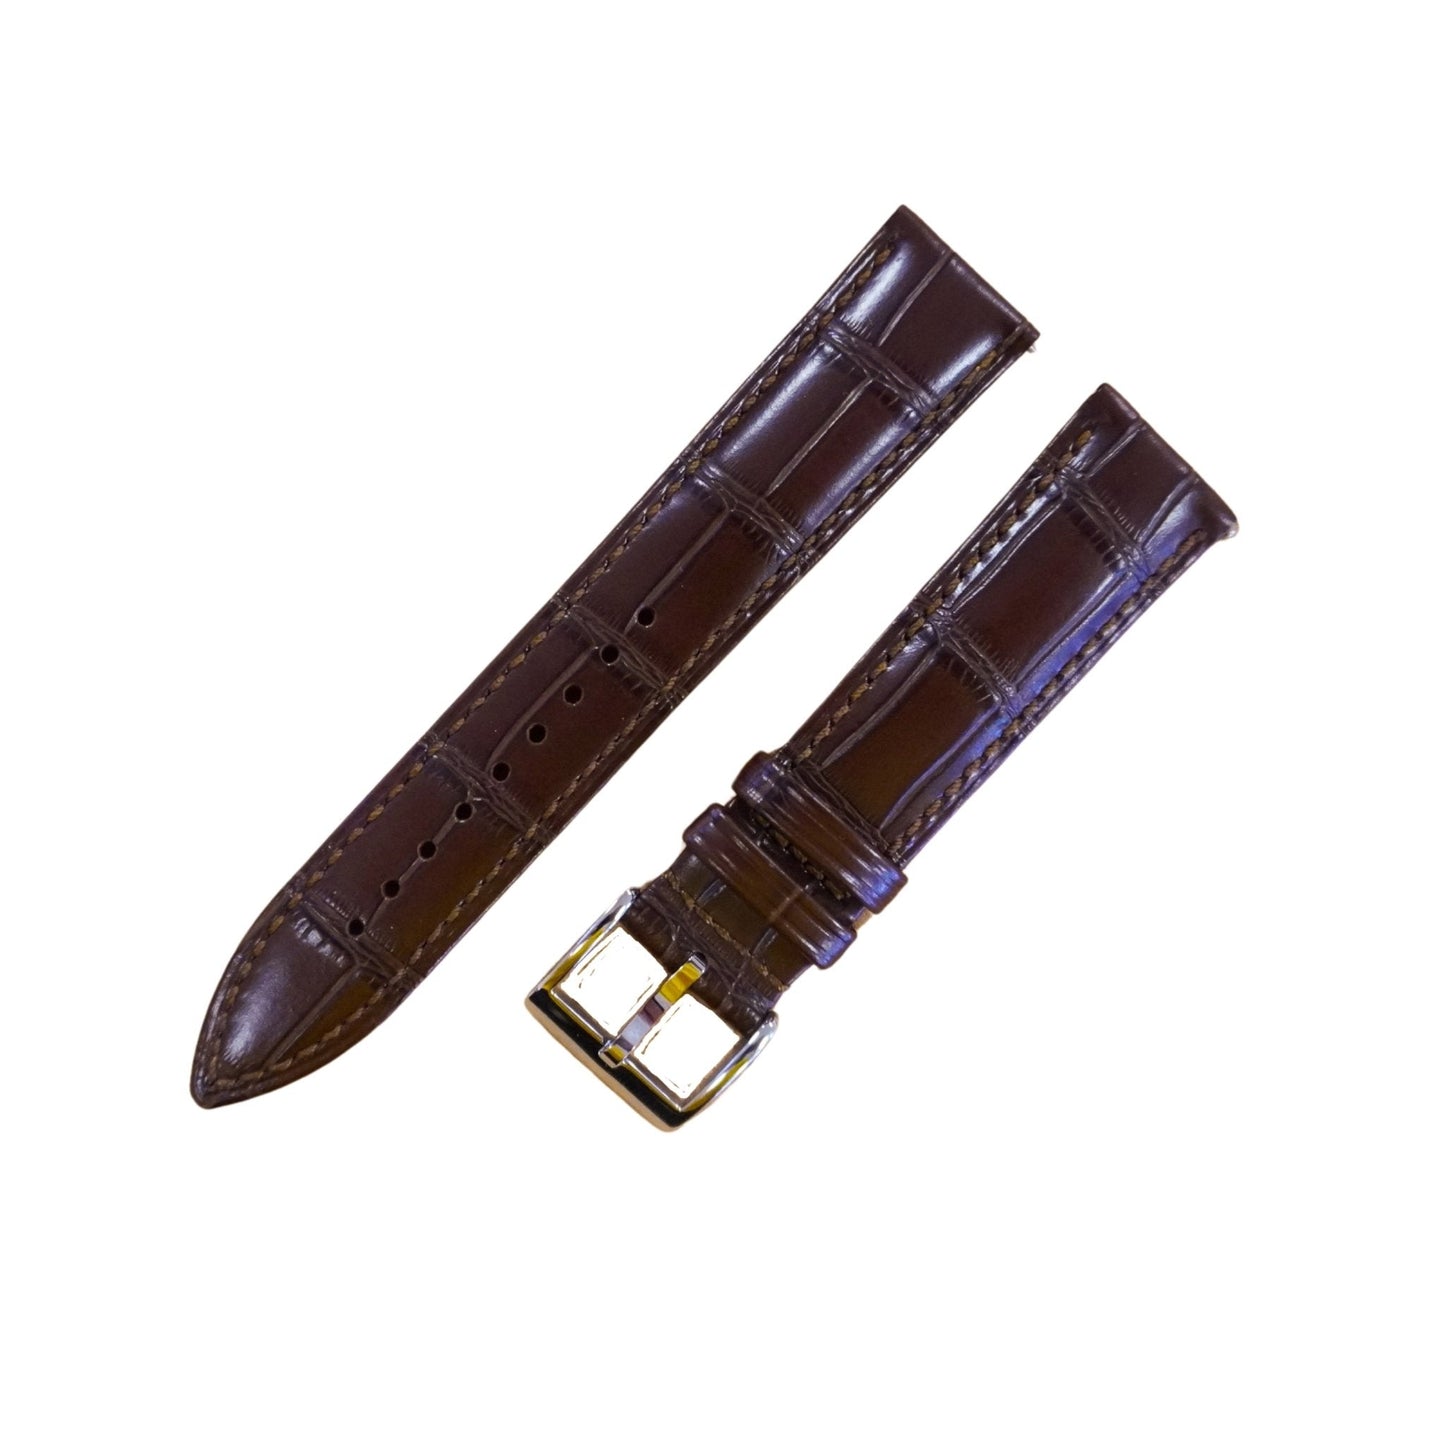 Bracelet montre cuir croco - MONTRE A PAPY - Montre automatique seiko mod 18mmBrown